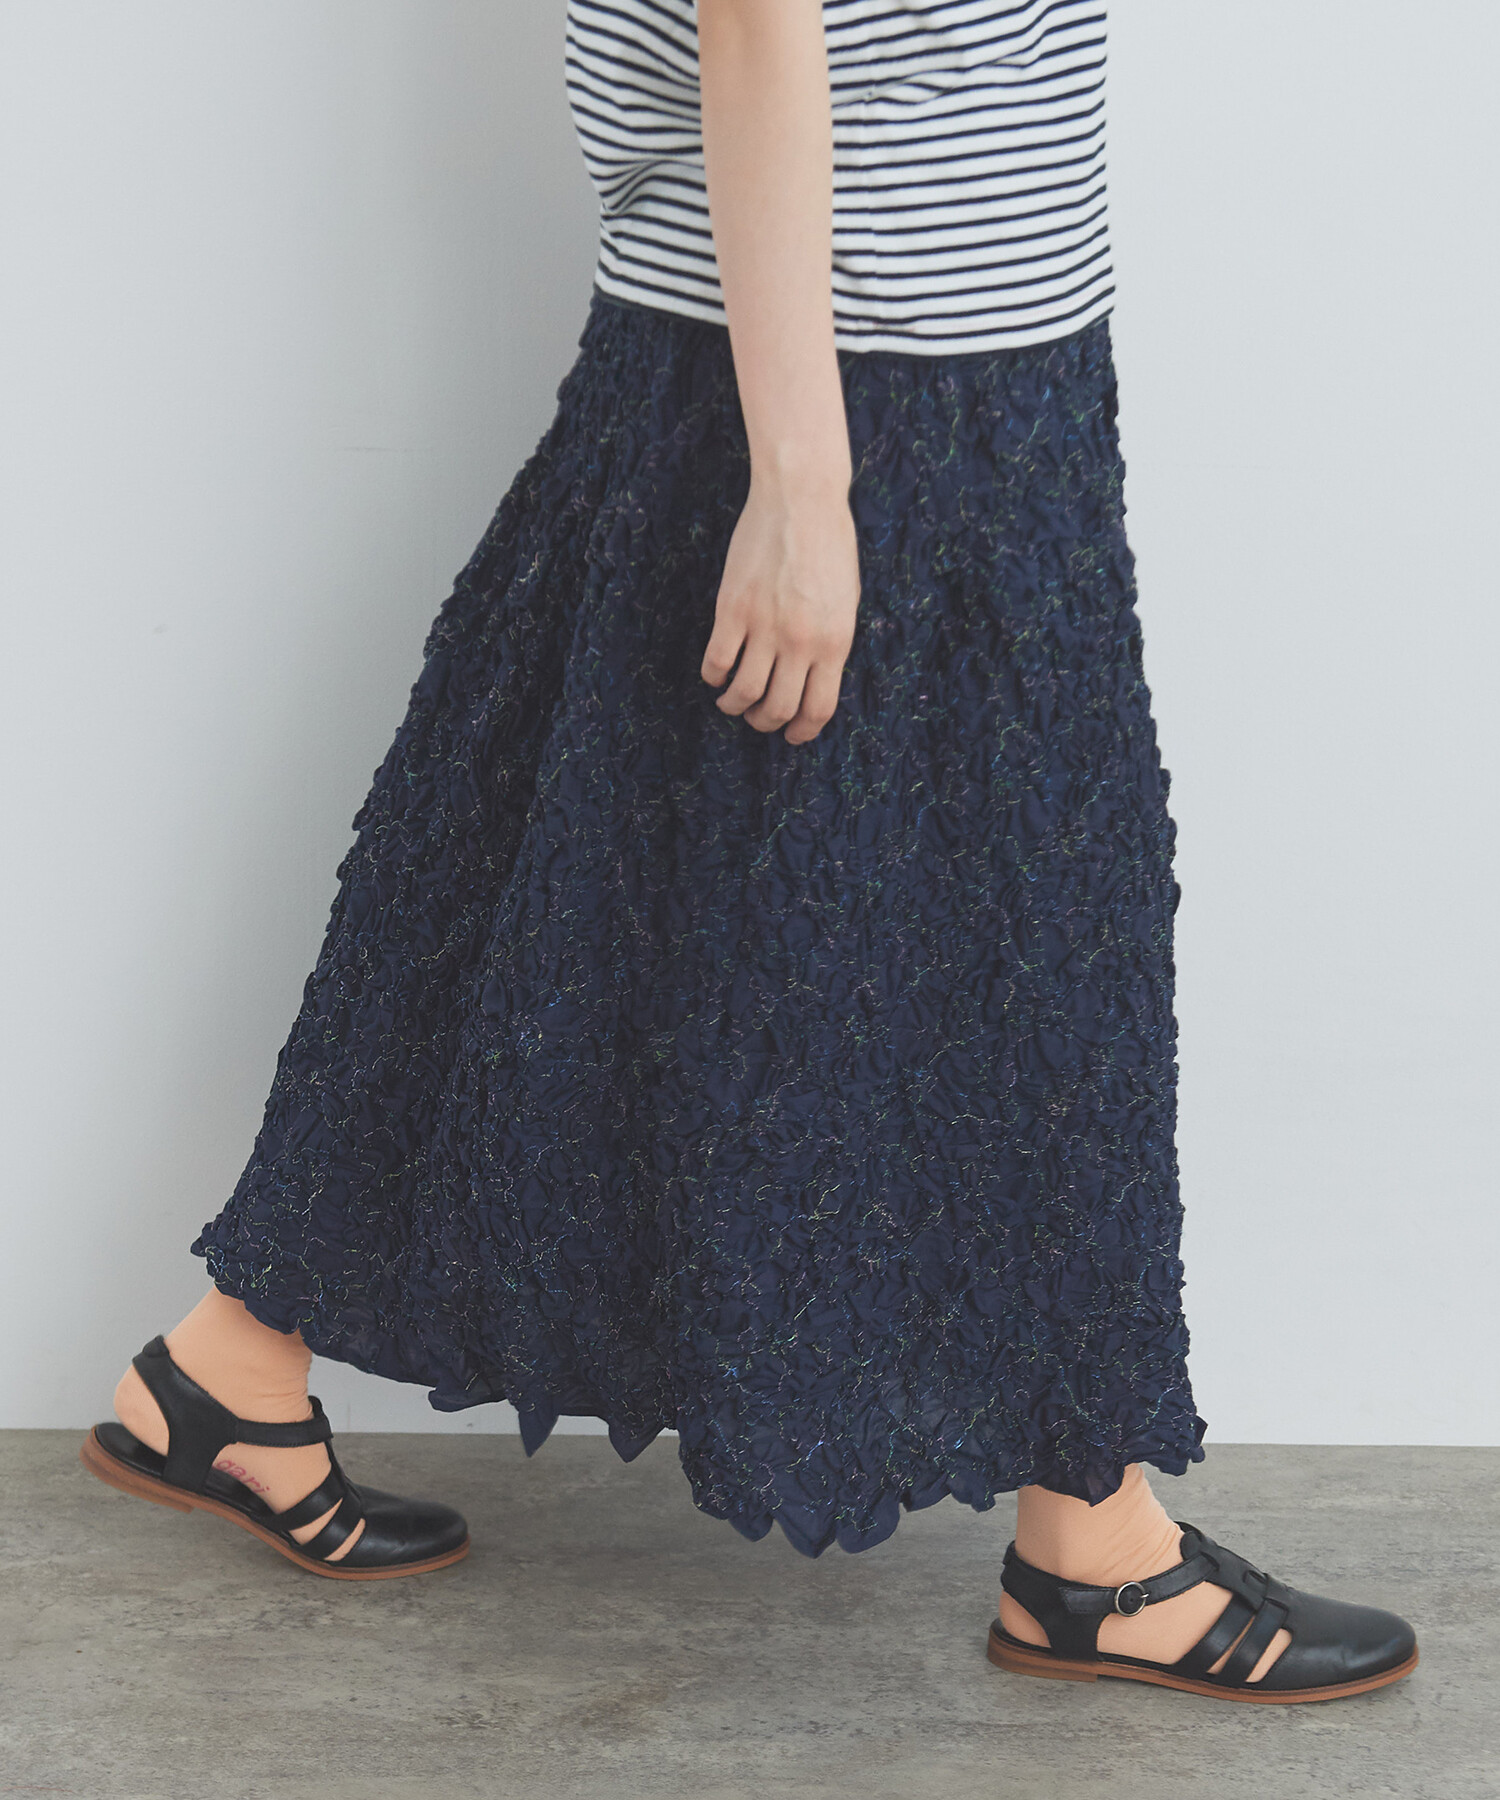 AMBIDEX Store 【予約販売】○くしゅくしゅはな刺繍 スカート(F シロ 